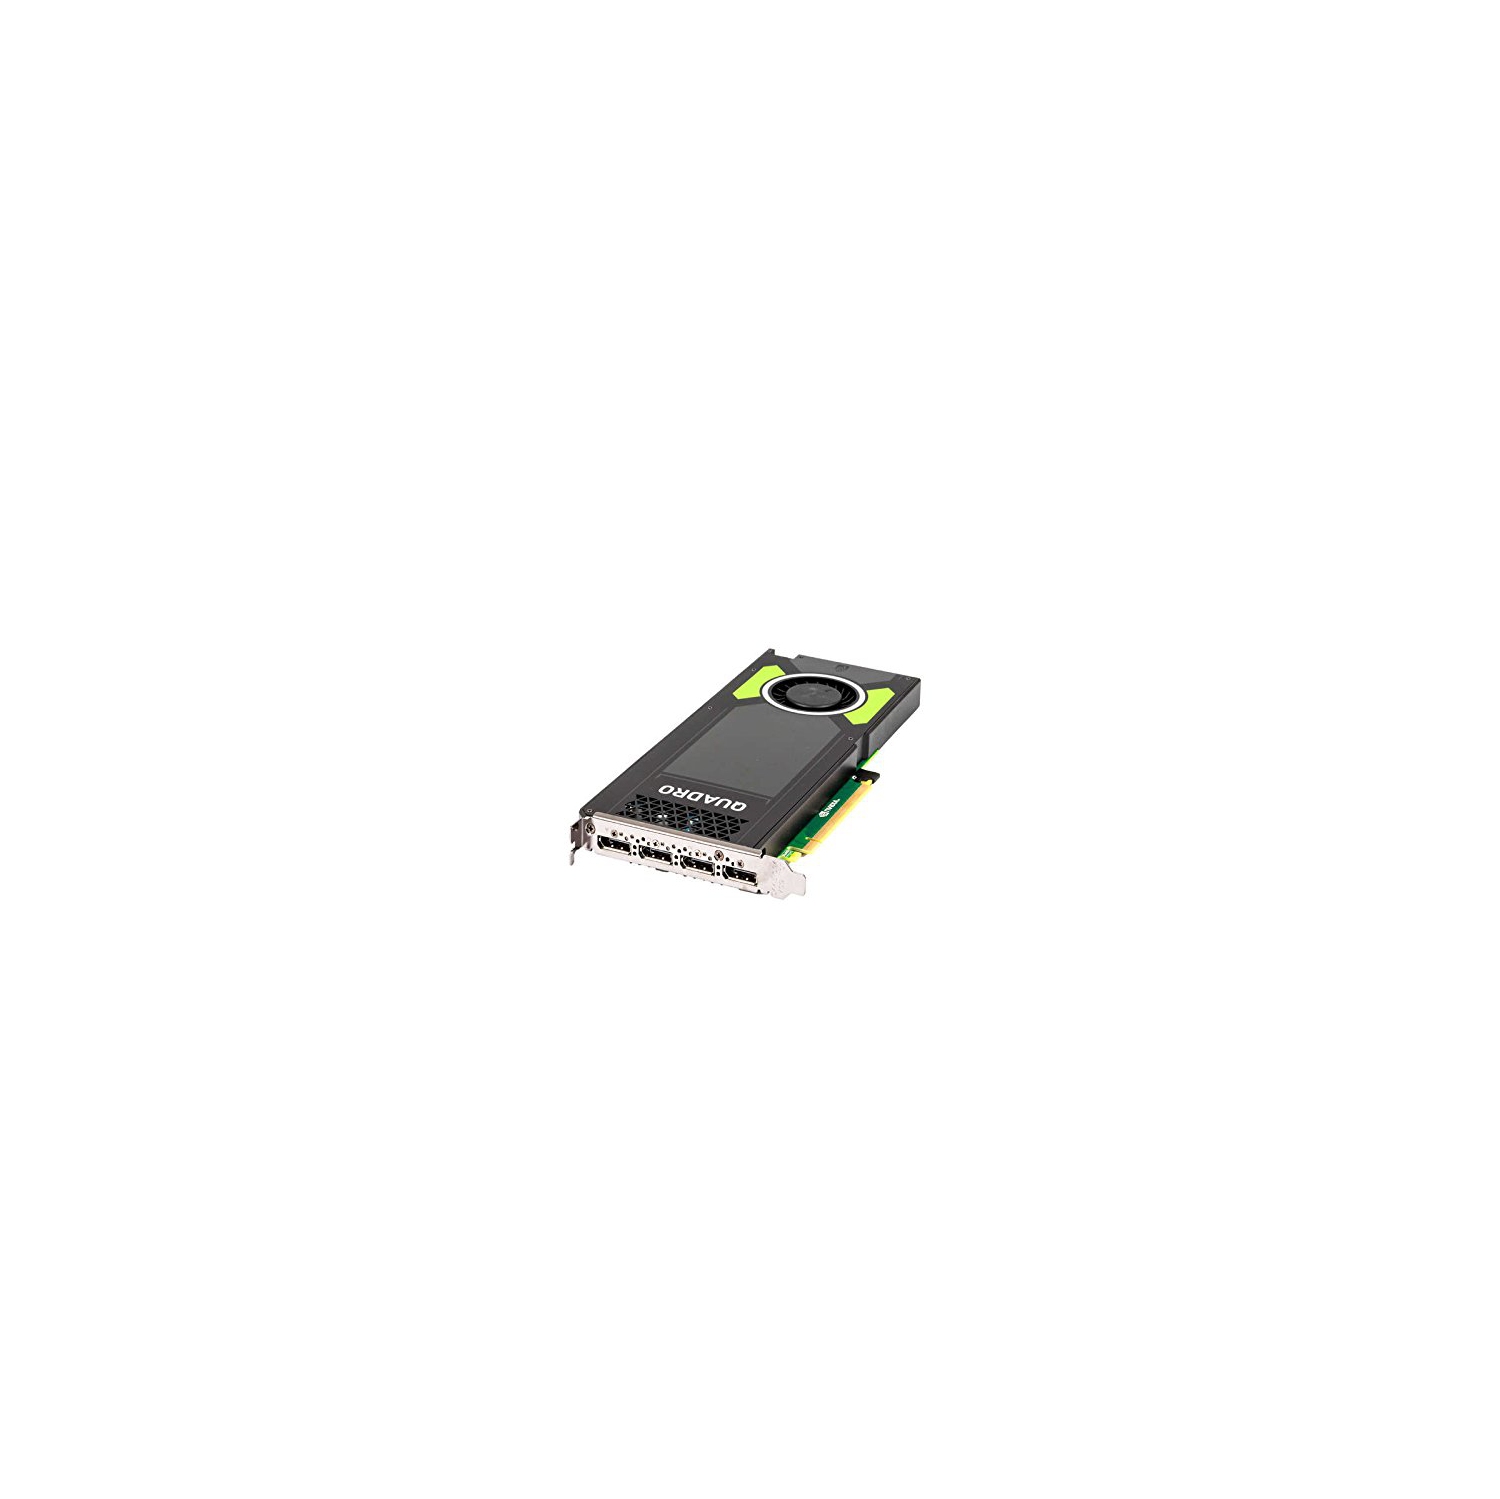 Nvidia Quadro M4000 8GB GDDR5 256-bit PCI Express 3.0 x16 Full Height Video Card (Certified Refurbished)